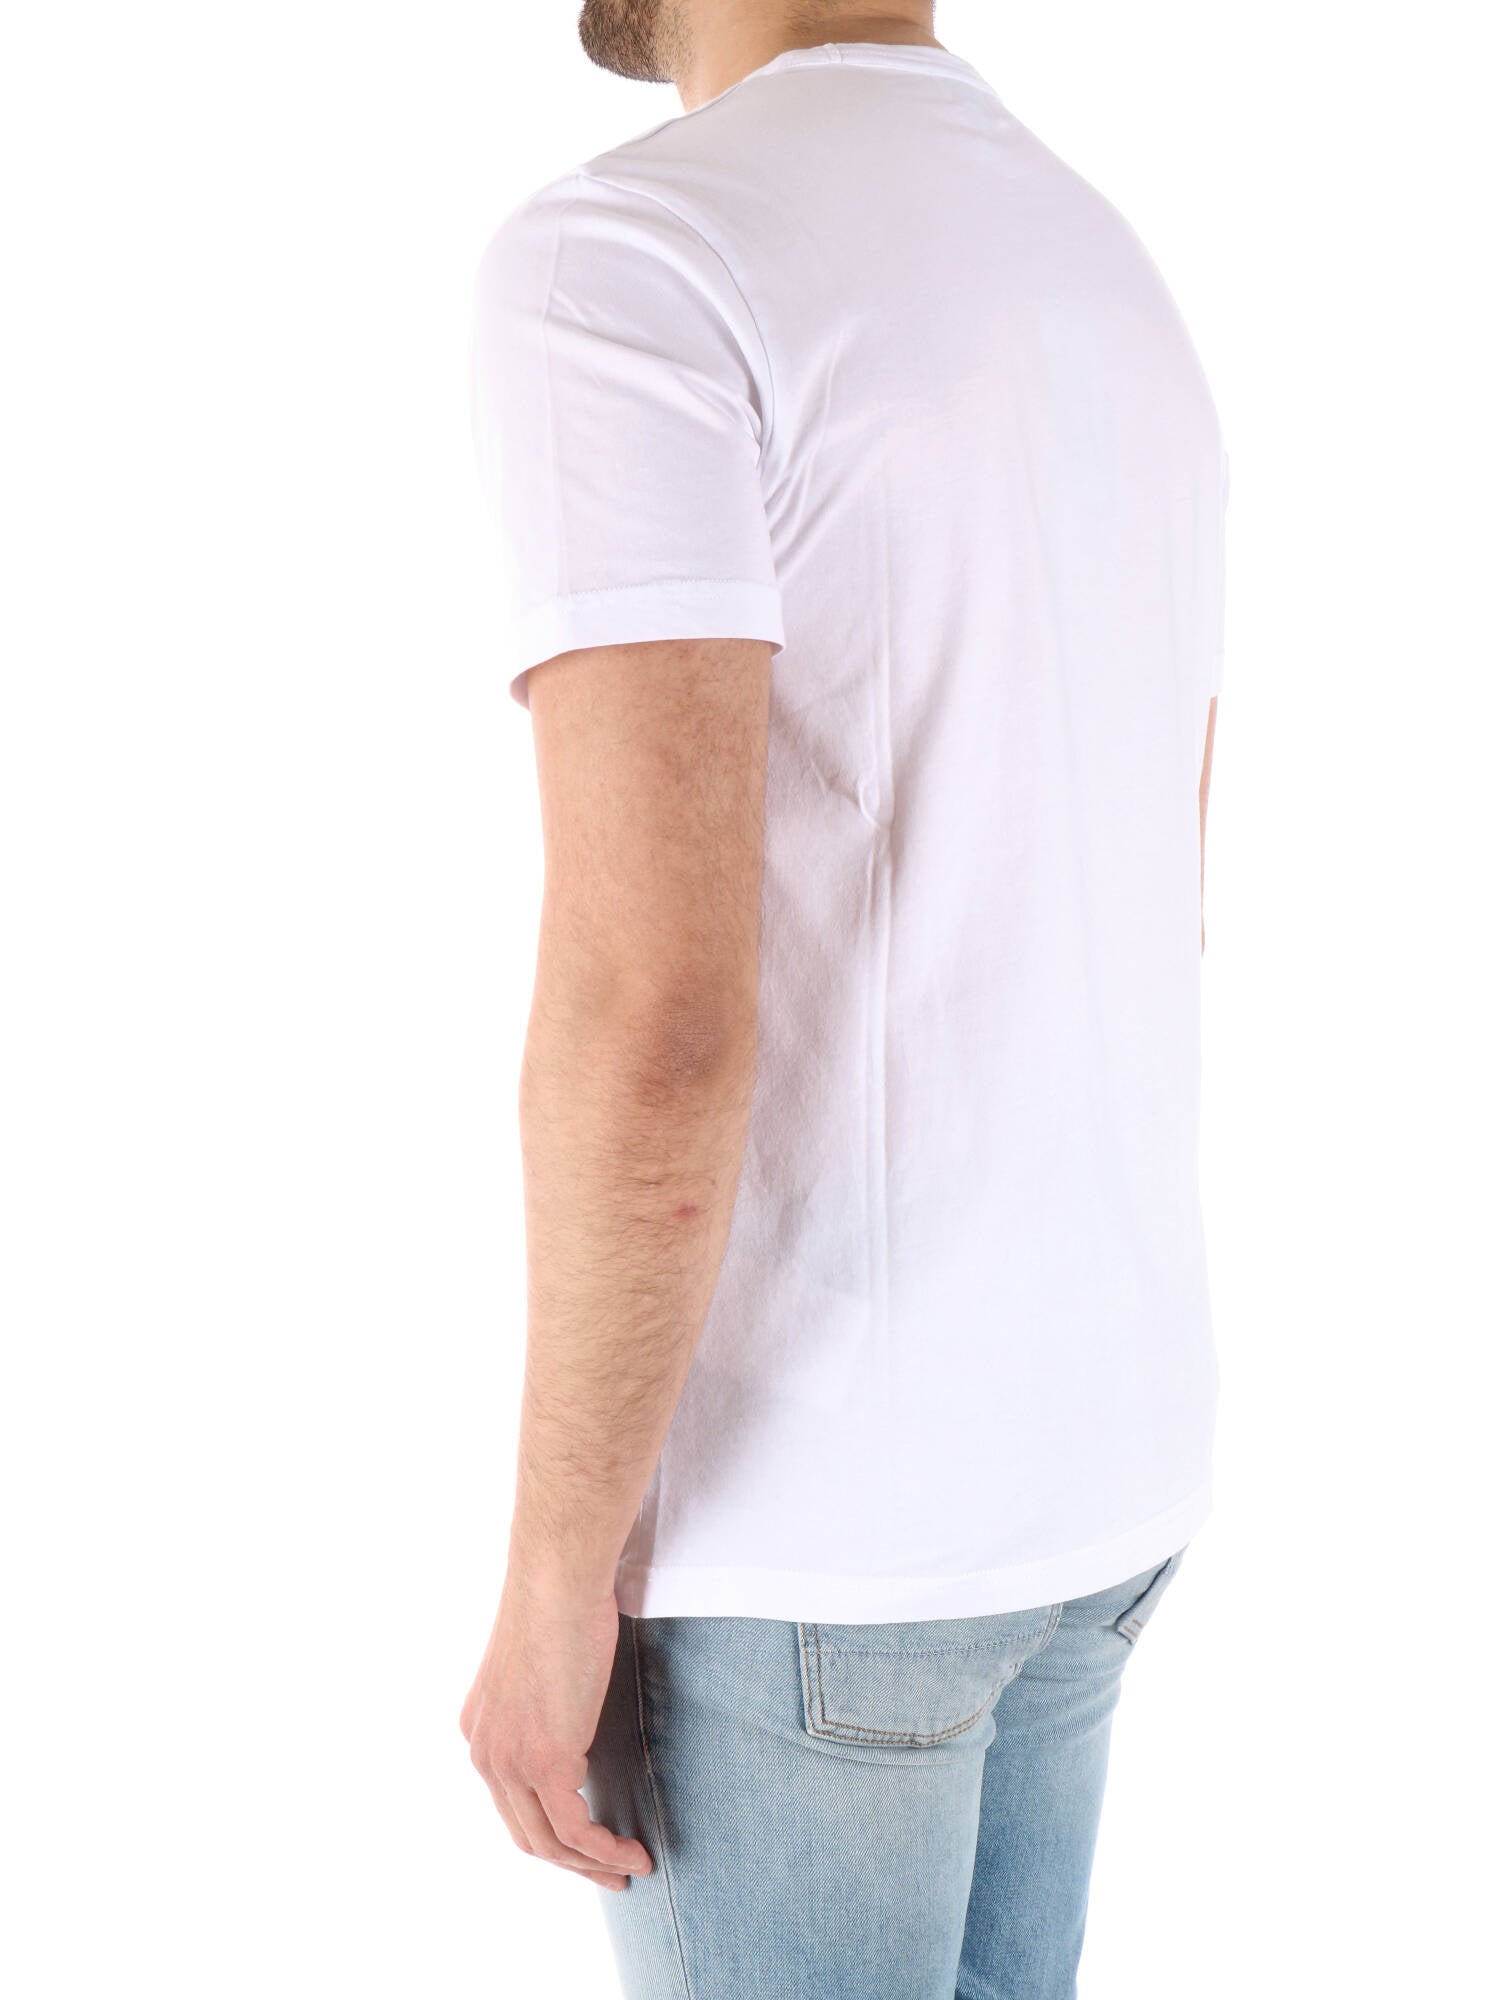 Woolrich t-shirt bianca uomo con stampa grafica